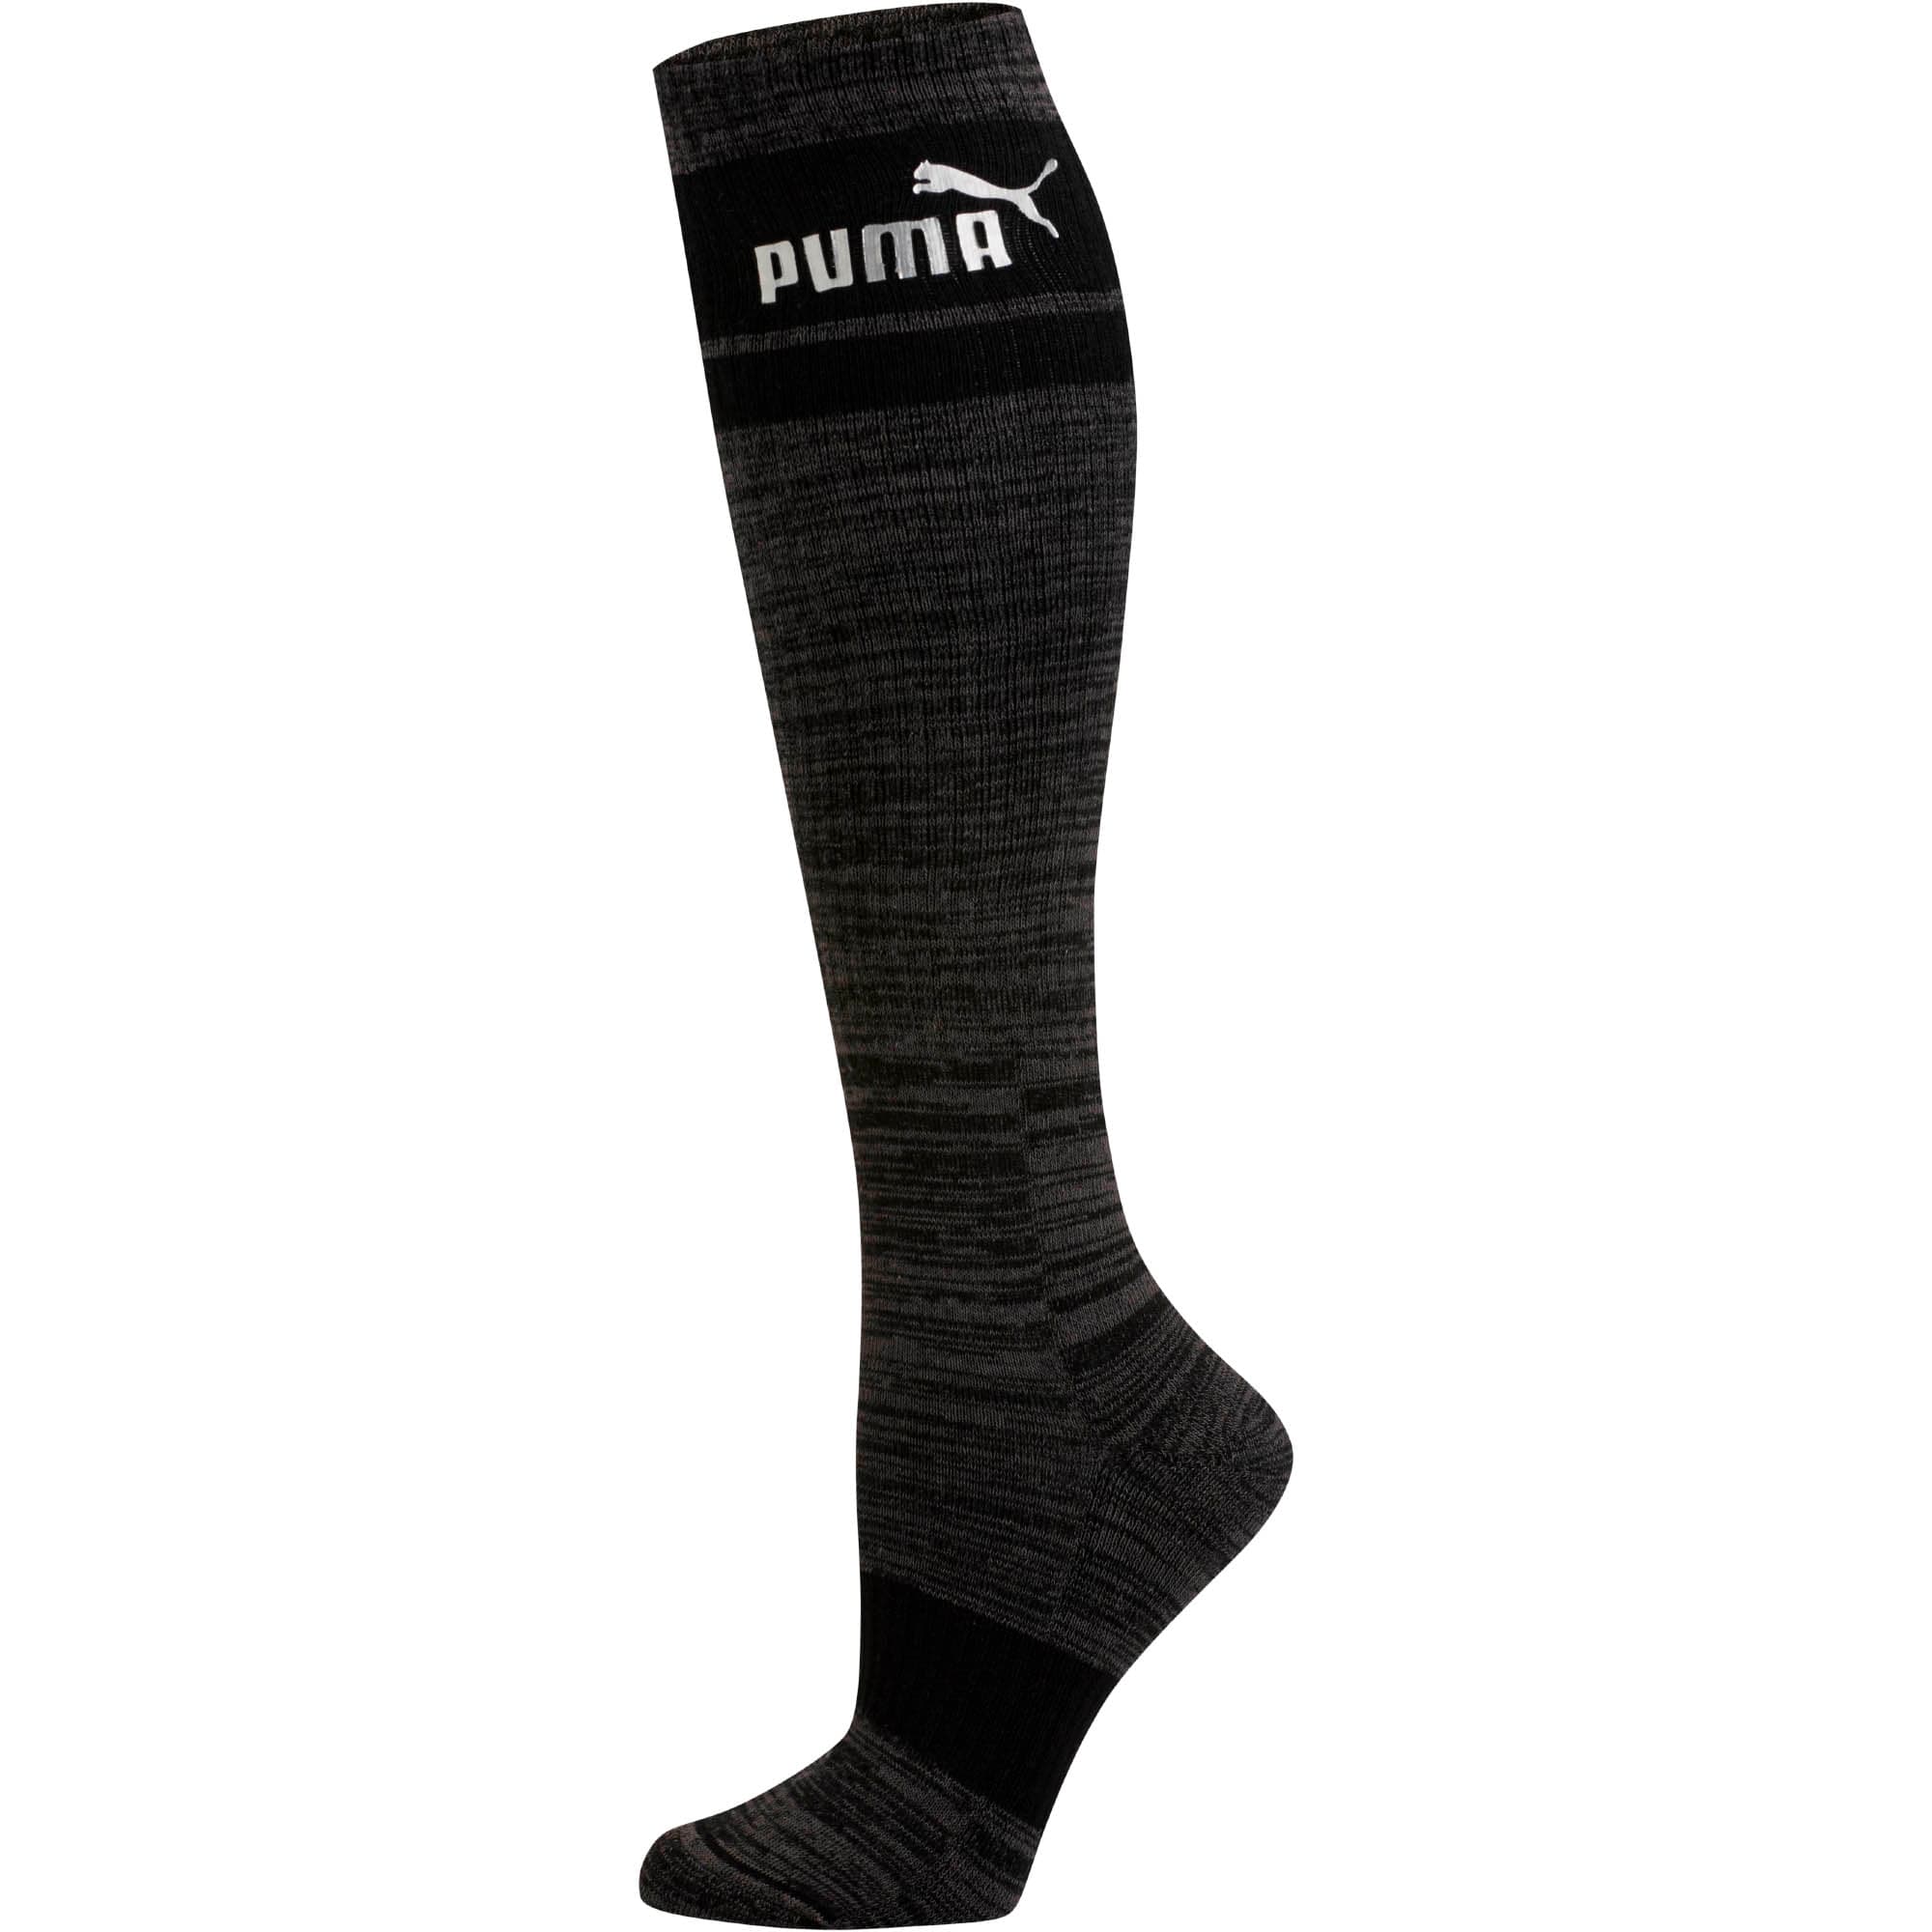 puma knee high socks